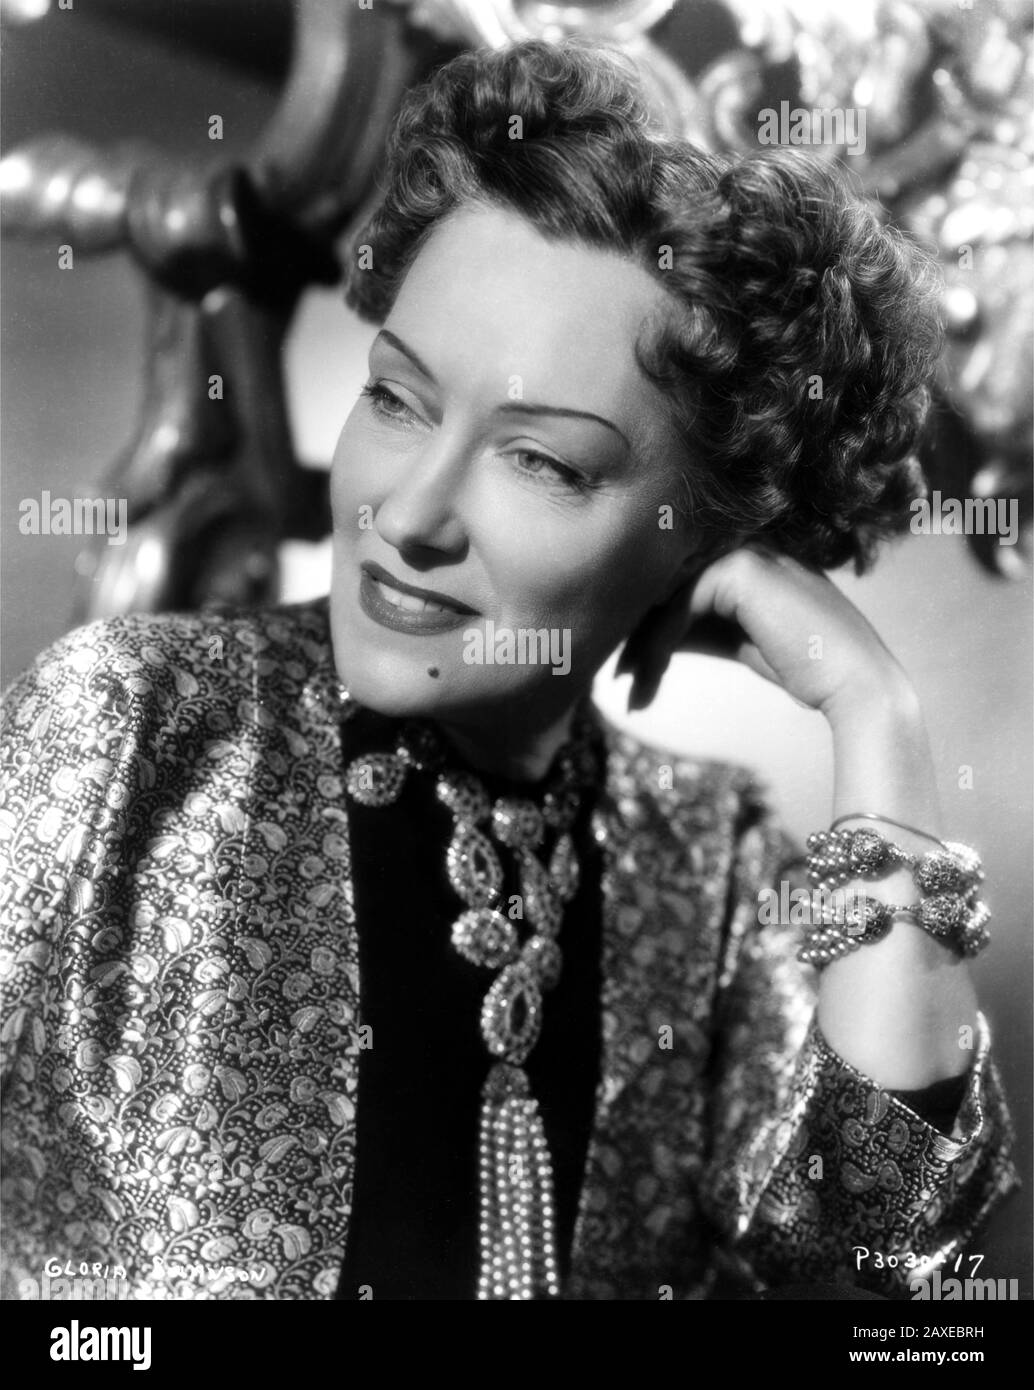 1951 : l'attrice cinematografica GLORIA SWANSON ( Chicago 1898 - New York 1983 ) come norma Desmond in SUNSET BOULEVARD ( Viale del Tramonto ) di Billy Wilder, costume di Edith HEAD , Paramount pubblicity still - FILM - CINEMA - atrice cinematografia - VAMP - DIVA - DIVINA - DIVINA - Hollywood su Hollywood - sorriso - sorriso - sorriso - neo - mole - collana - collana ---- Archivio GBB Foto Stock